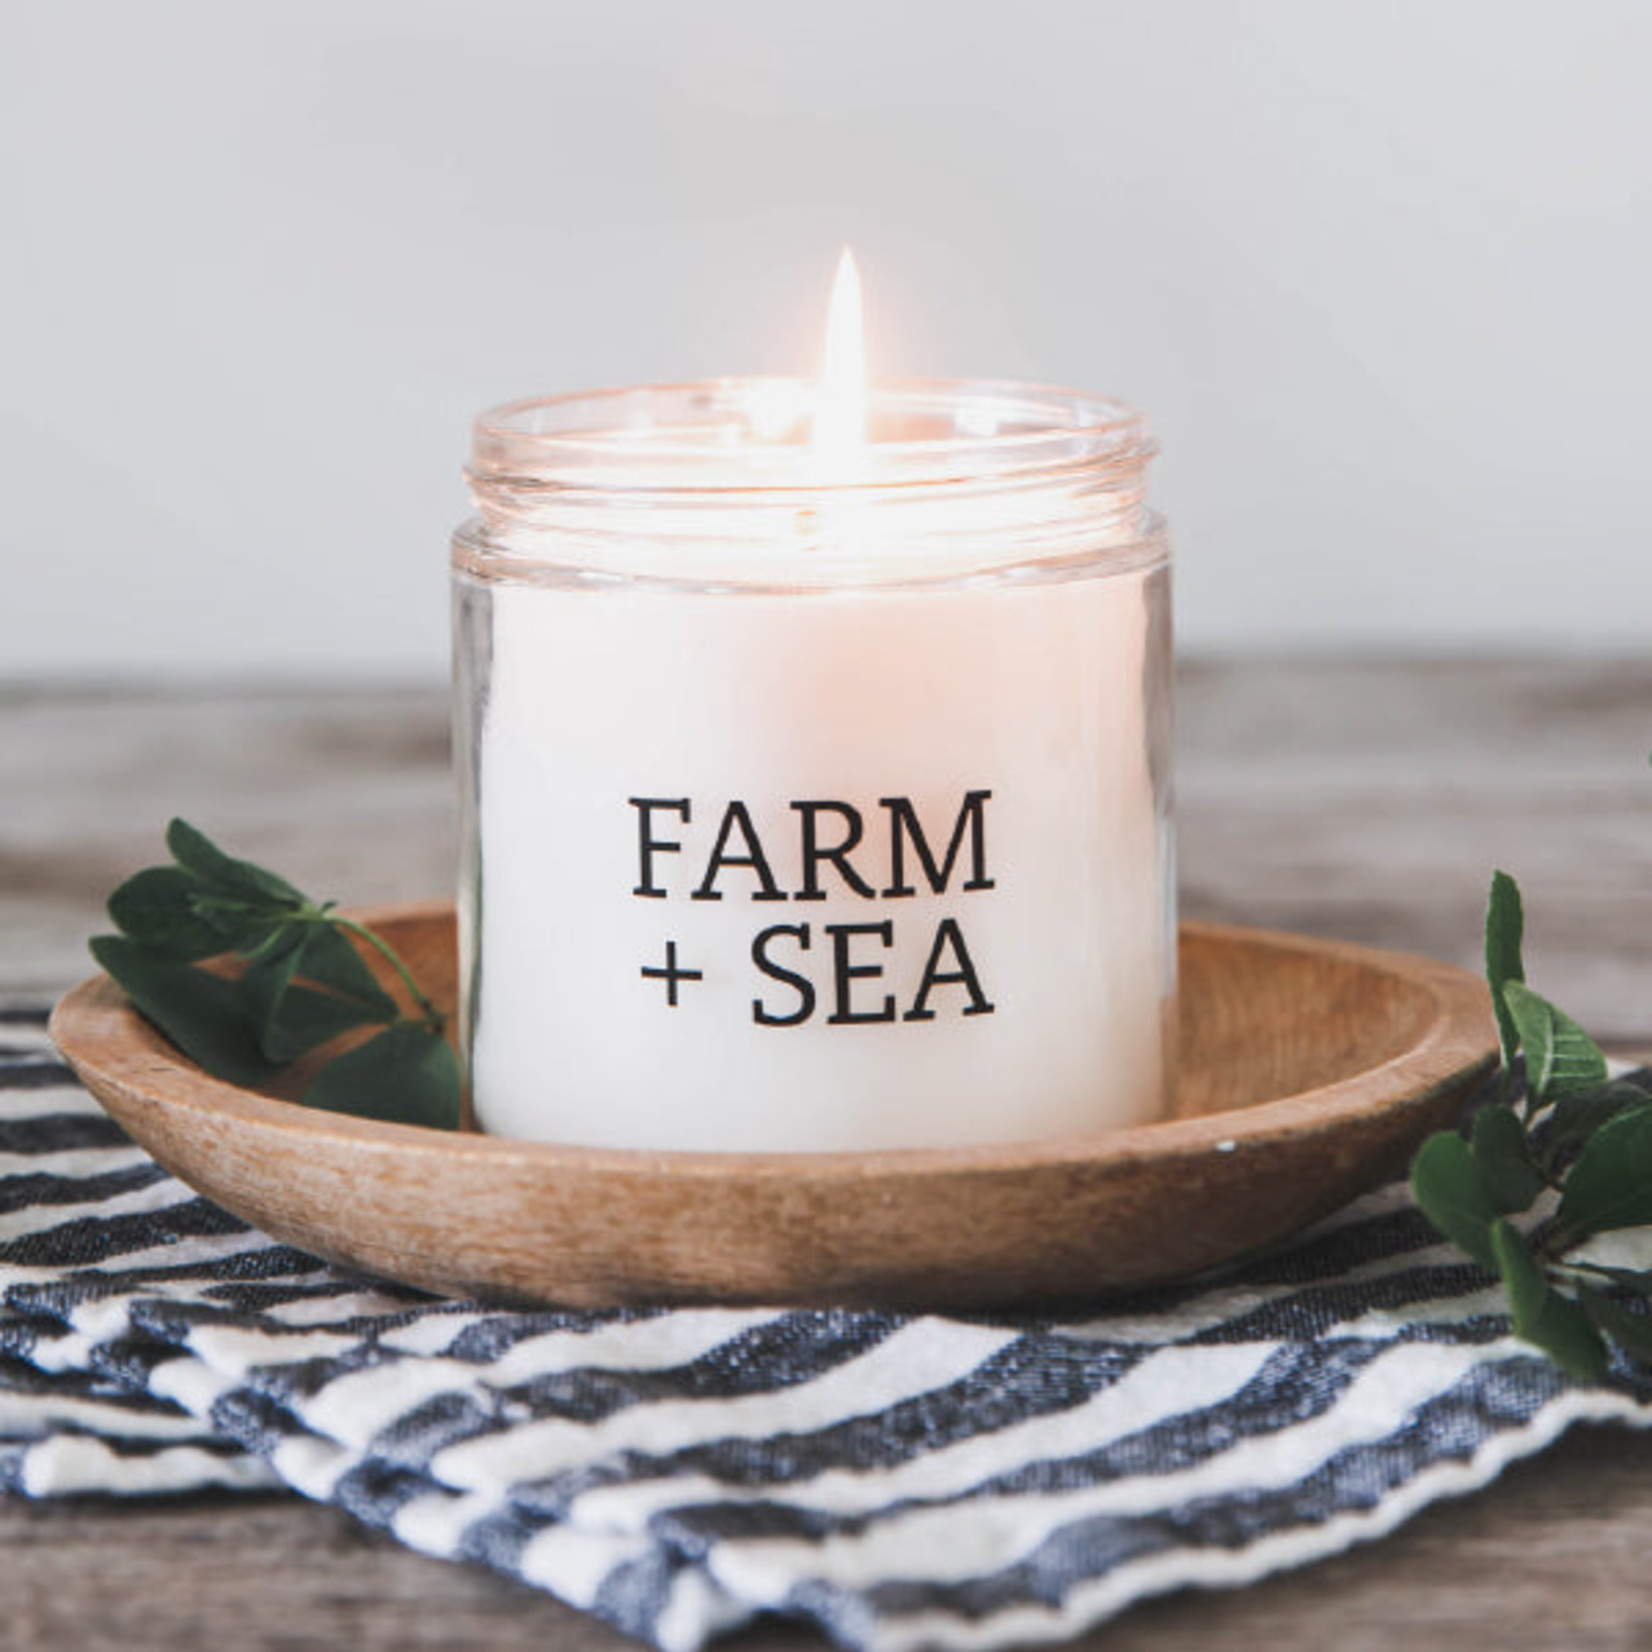 Farm + Sea Farm + Sea - 7.5 oz. Candle Jar - Rosemary + Mint